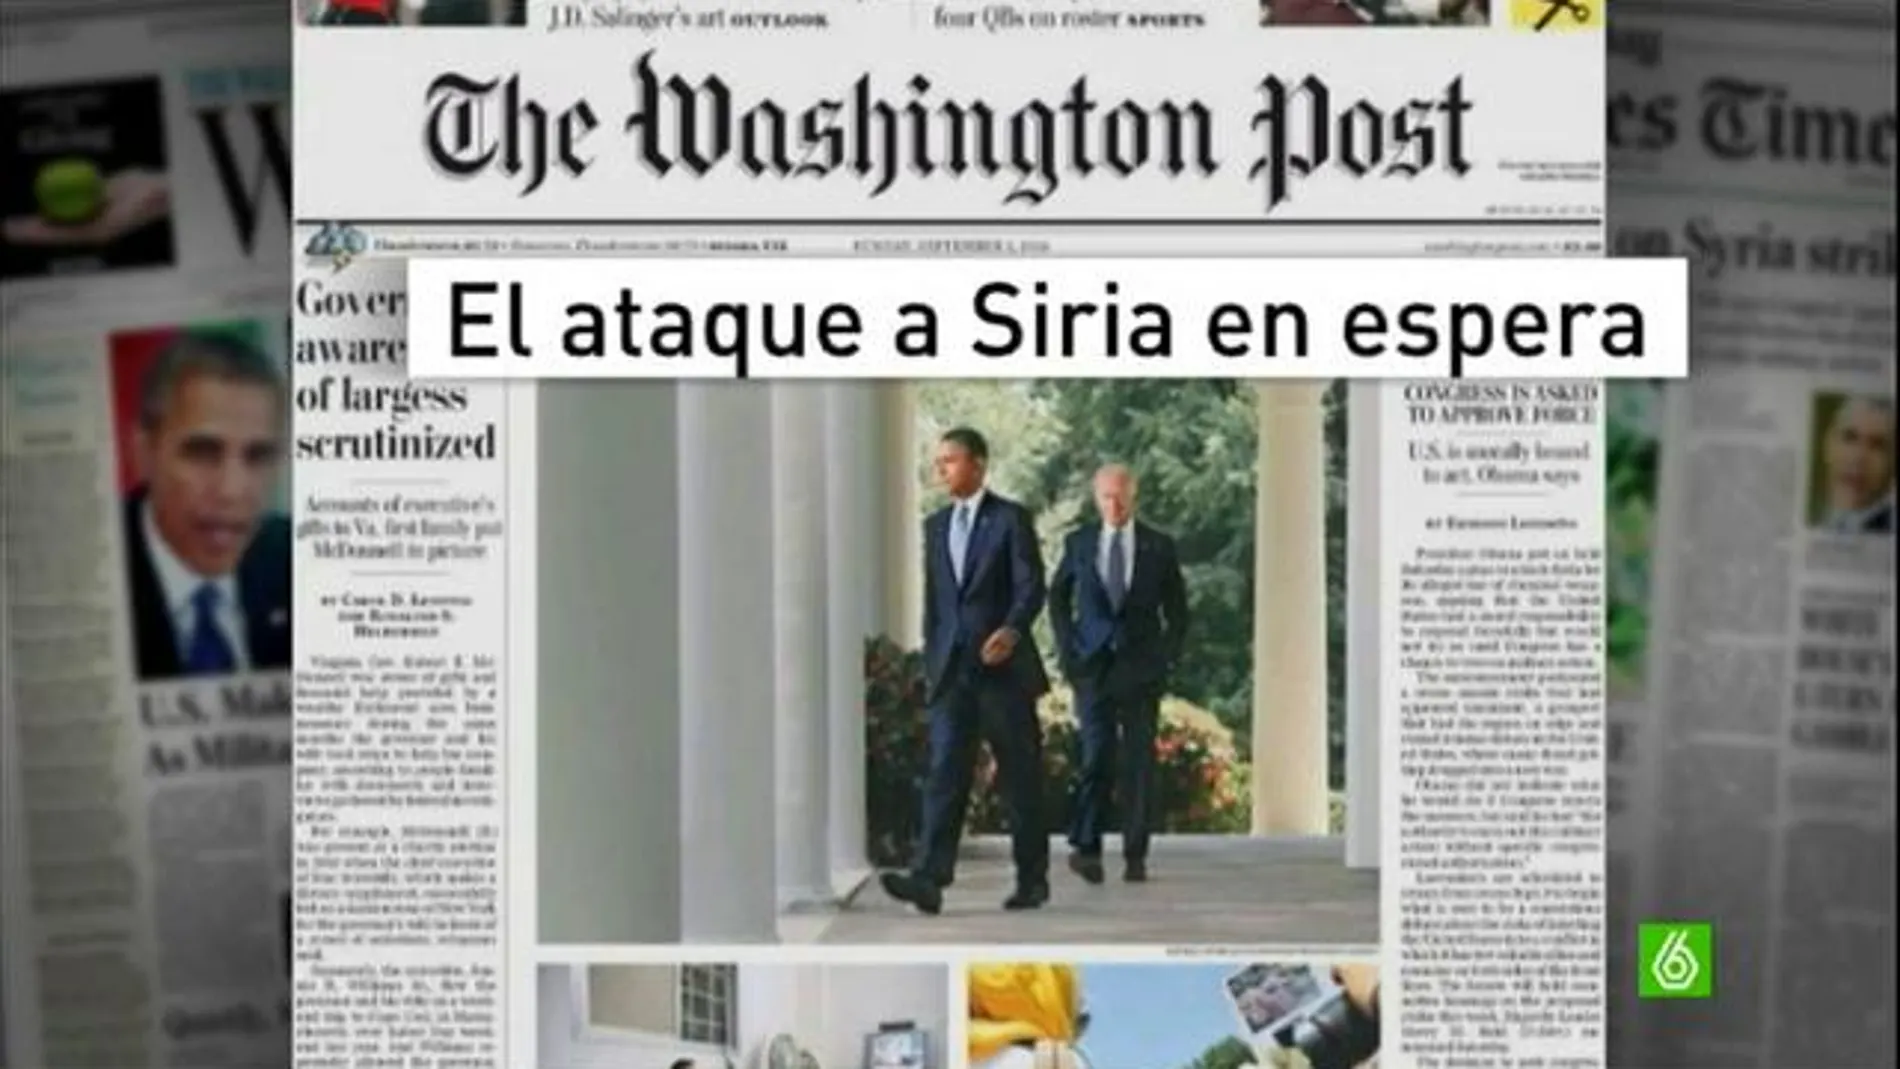 La decisión de Obama sobre Siria, a examen en los medios